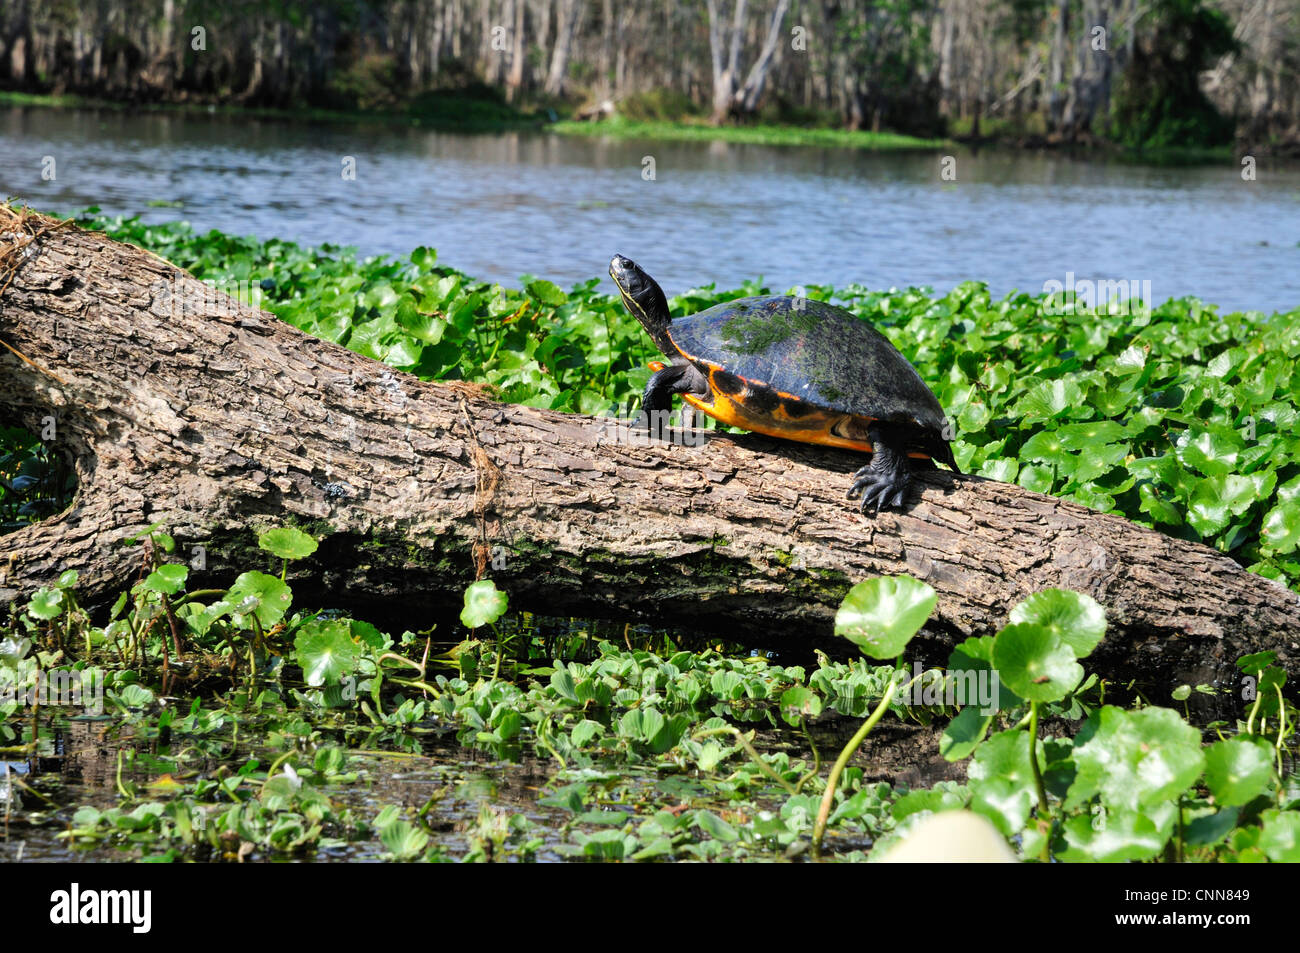 La tortuga de Florida asoleándose en un registro en el río Hontoon muerto Foto de stock